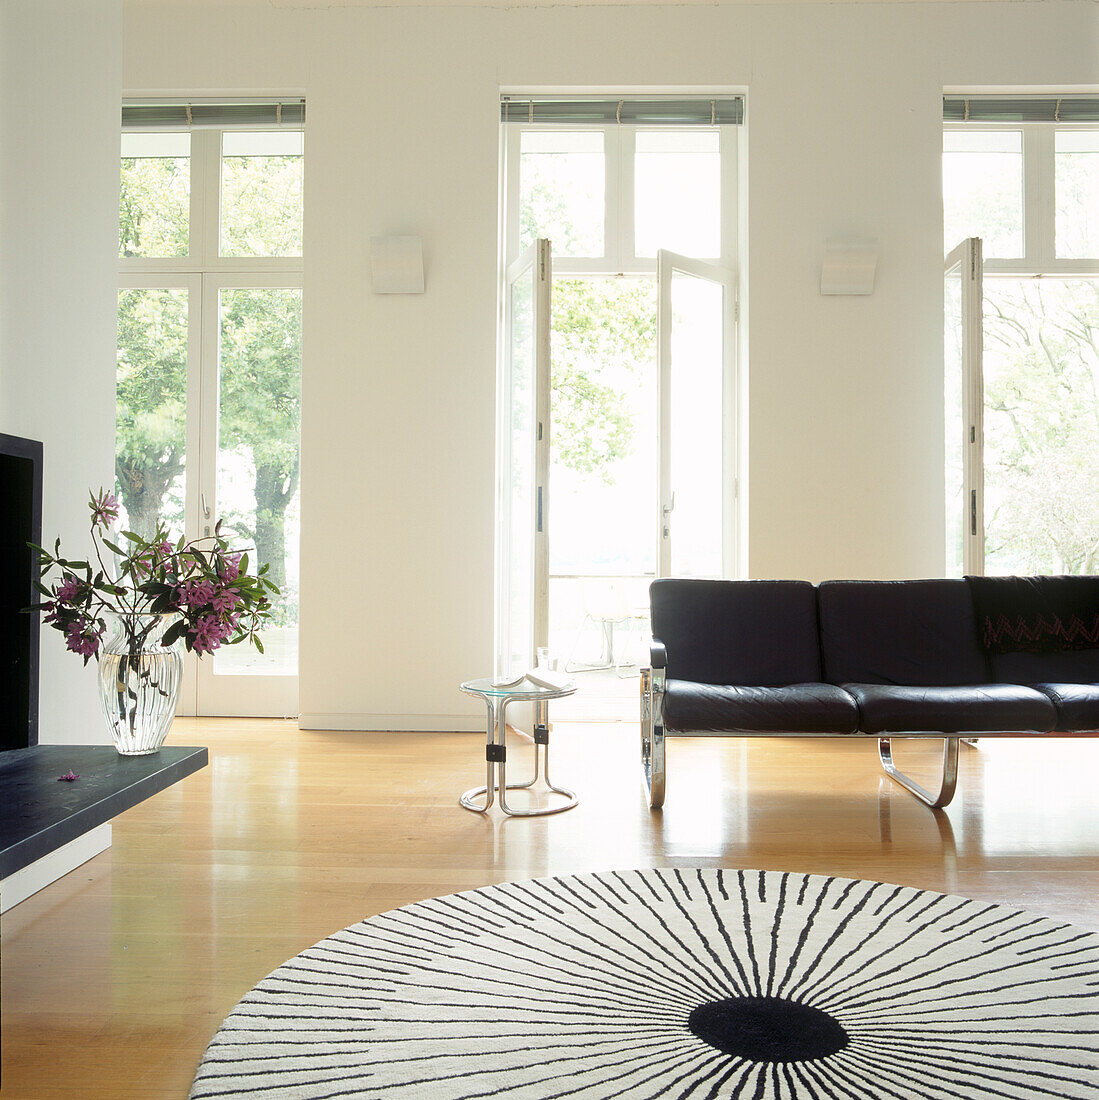 Geräumiges Wohnzimmer mit einem schwarz-weißen, kreisförmigen Sunburst-Teppich und schwarzen Ledermöbeln aus den 60er Jahren